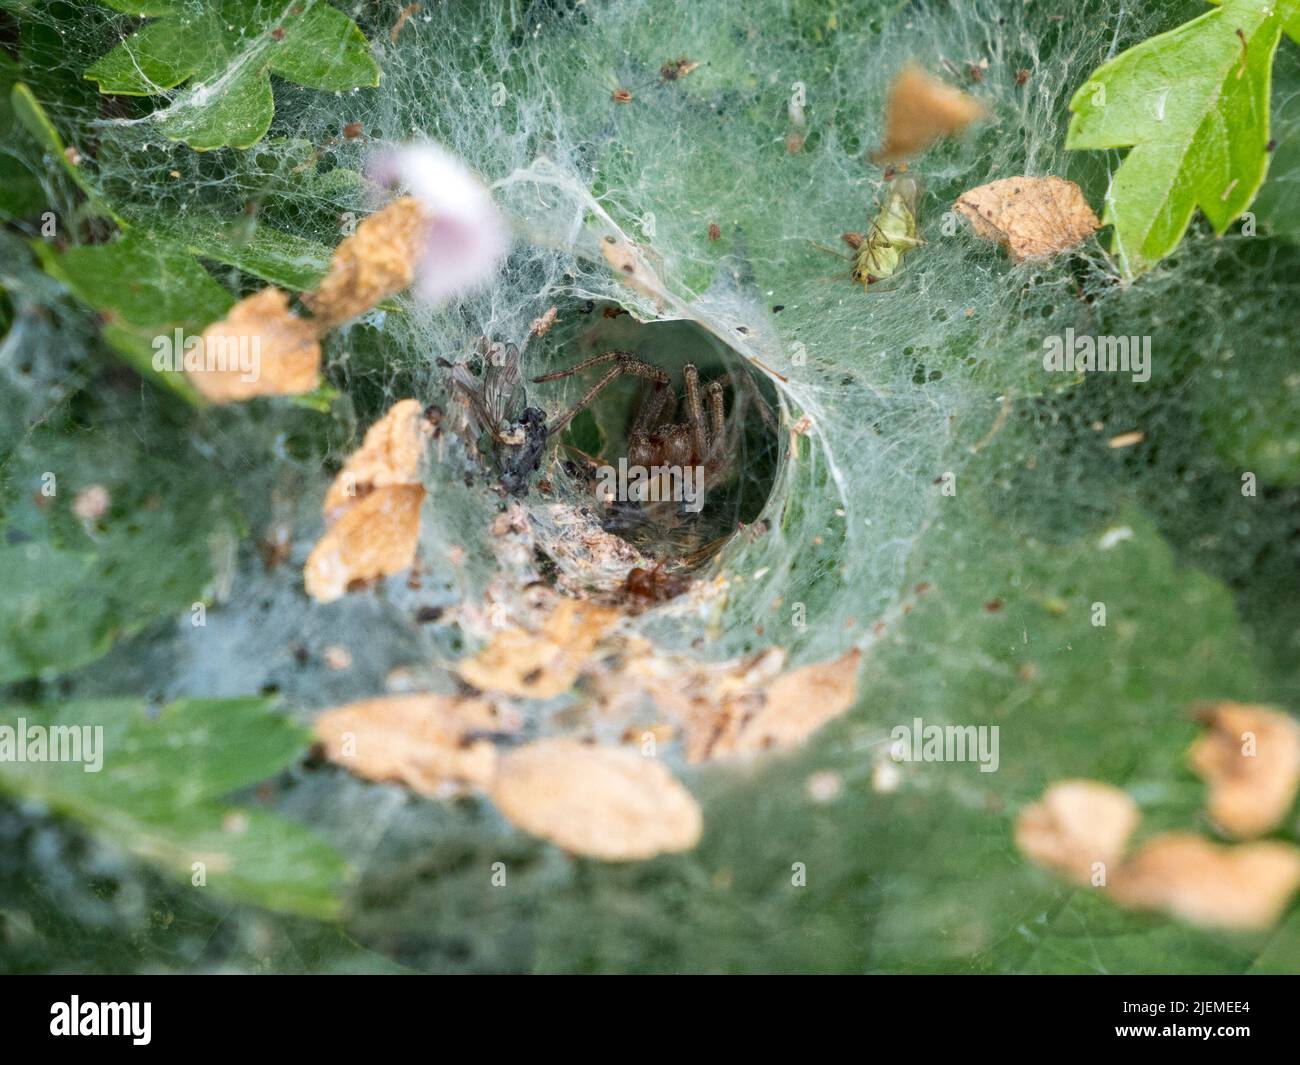 Una araña del laberinto (Agelena labyrinthica) sentada en su red de embudo en Hounslow Heath, Londres, Reino Unido. Foto de stock